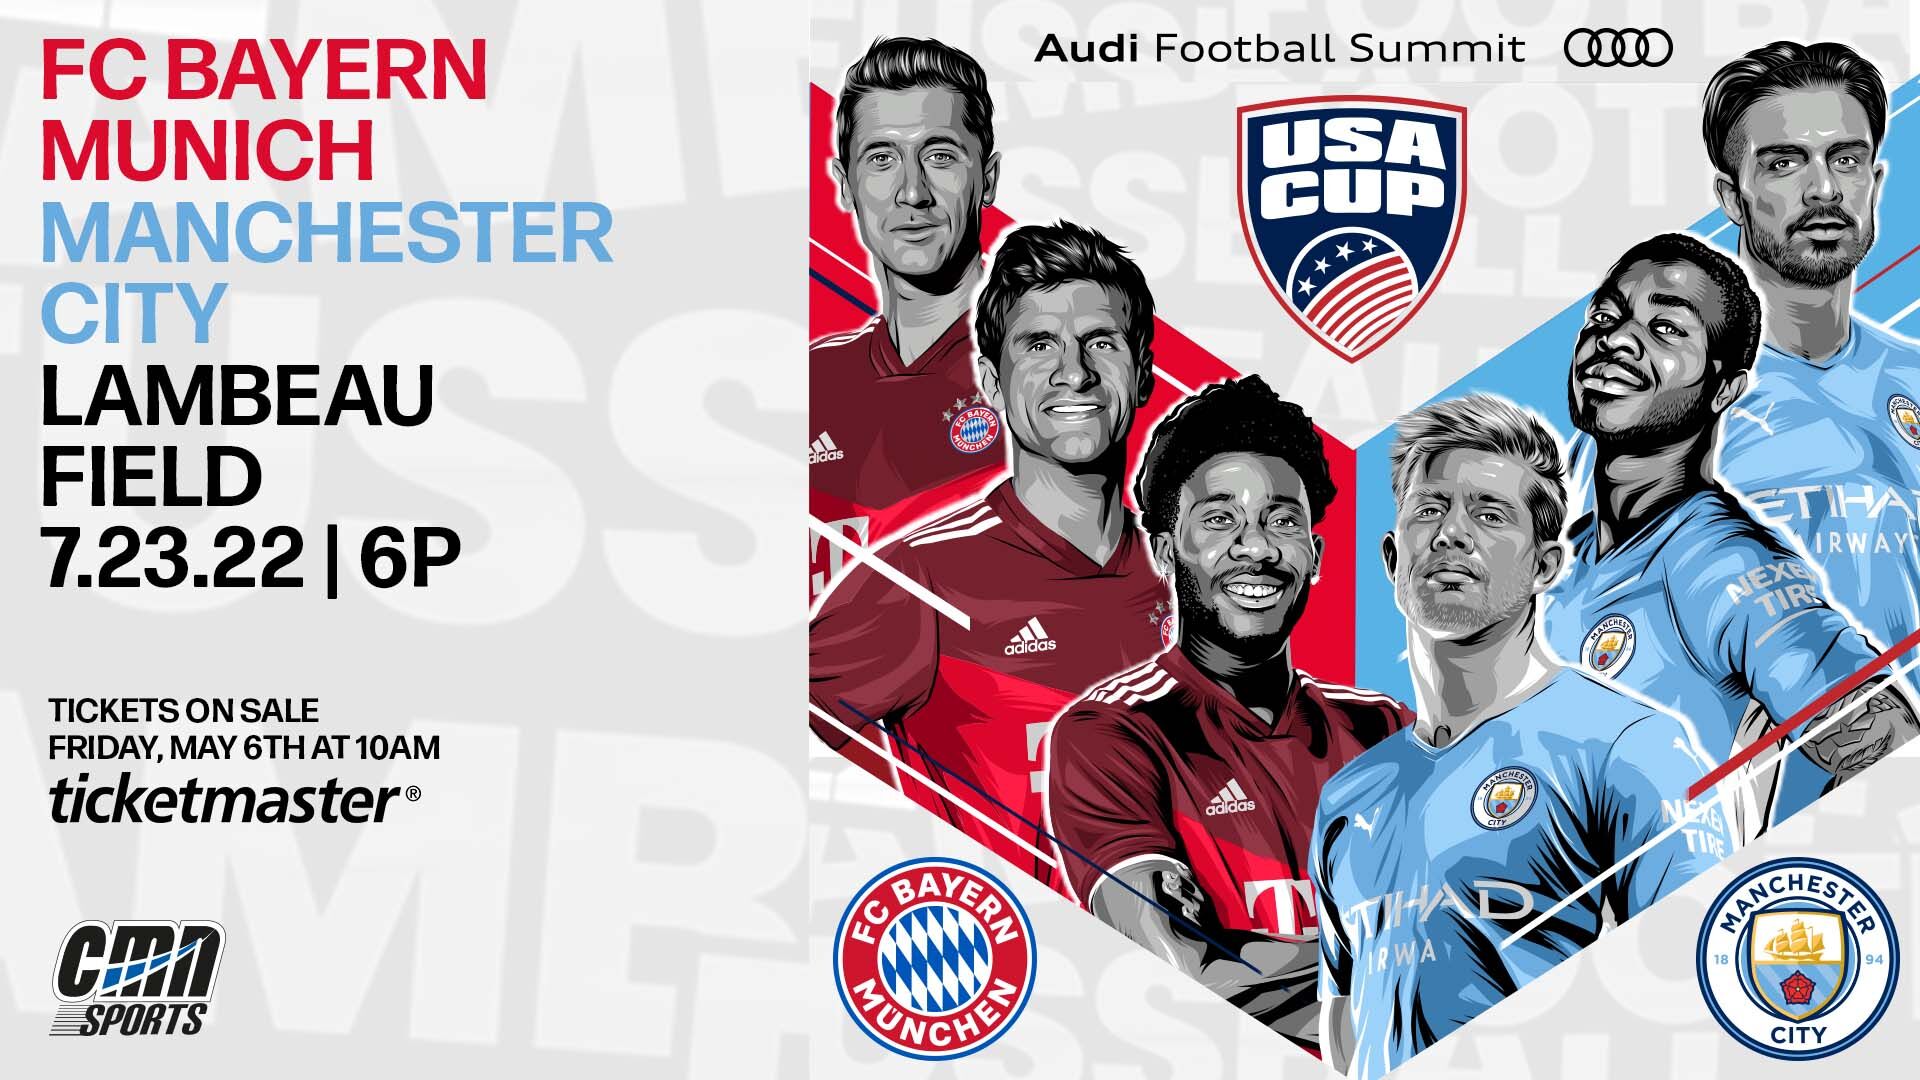 FC Bayern Munich, Manchester City to play exhibition match at Lambeau Field Sports waow